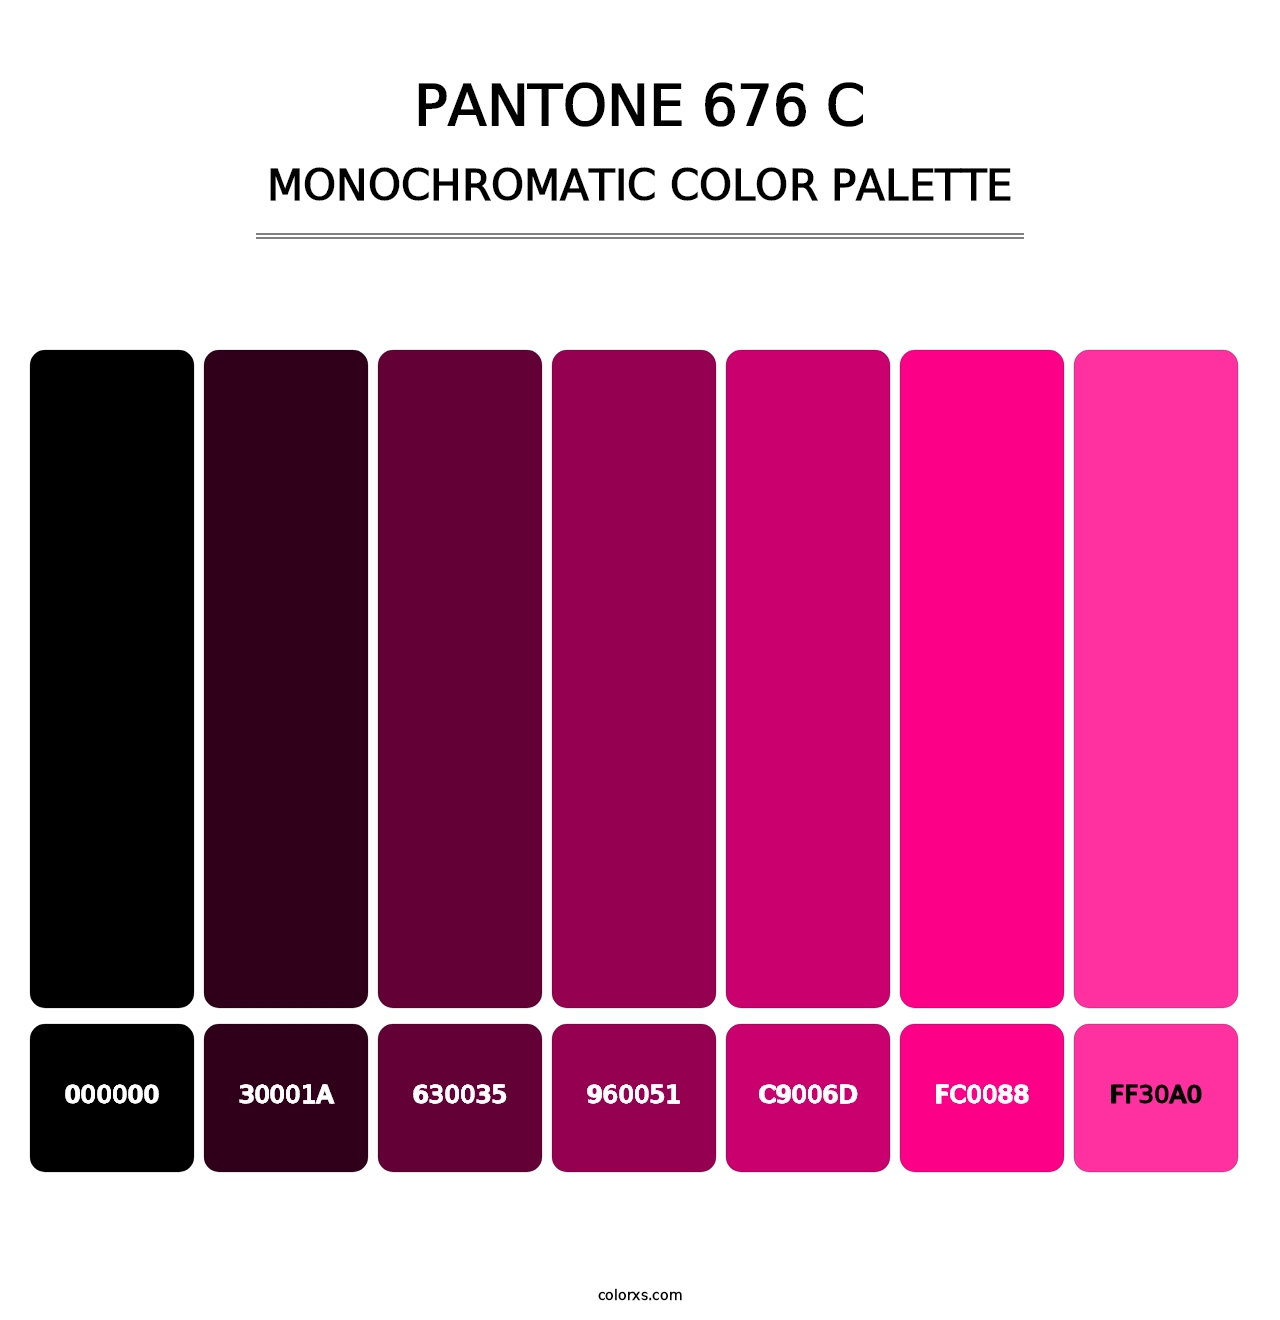 PANTONE 676 C - Monochromatic Color Palette